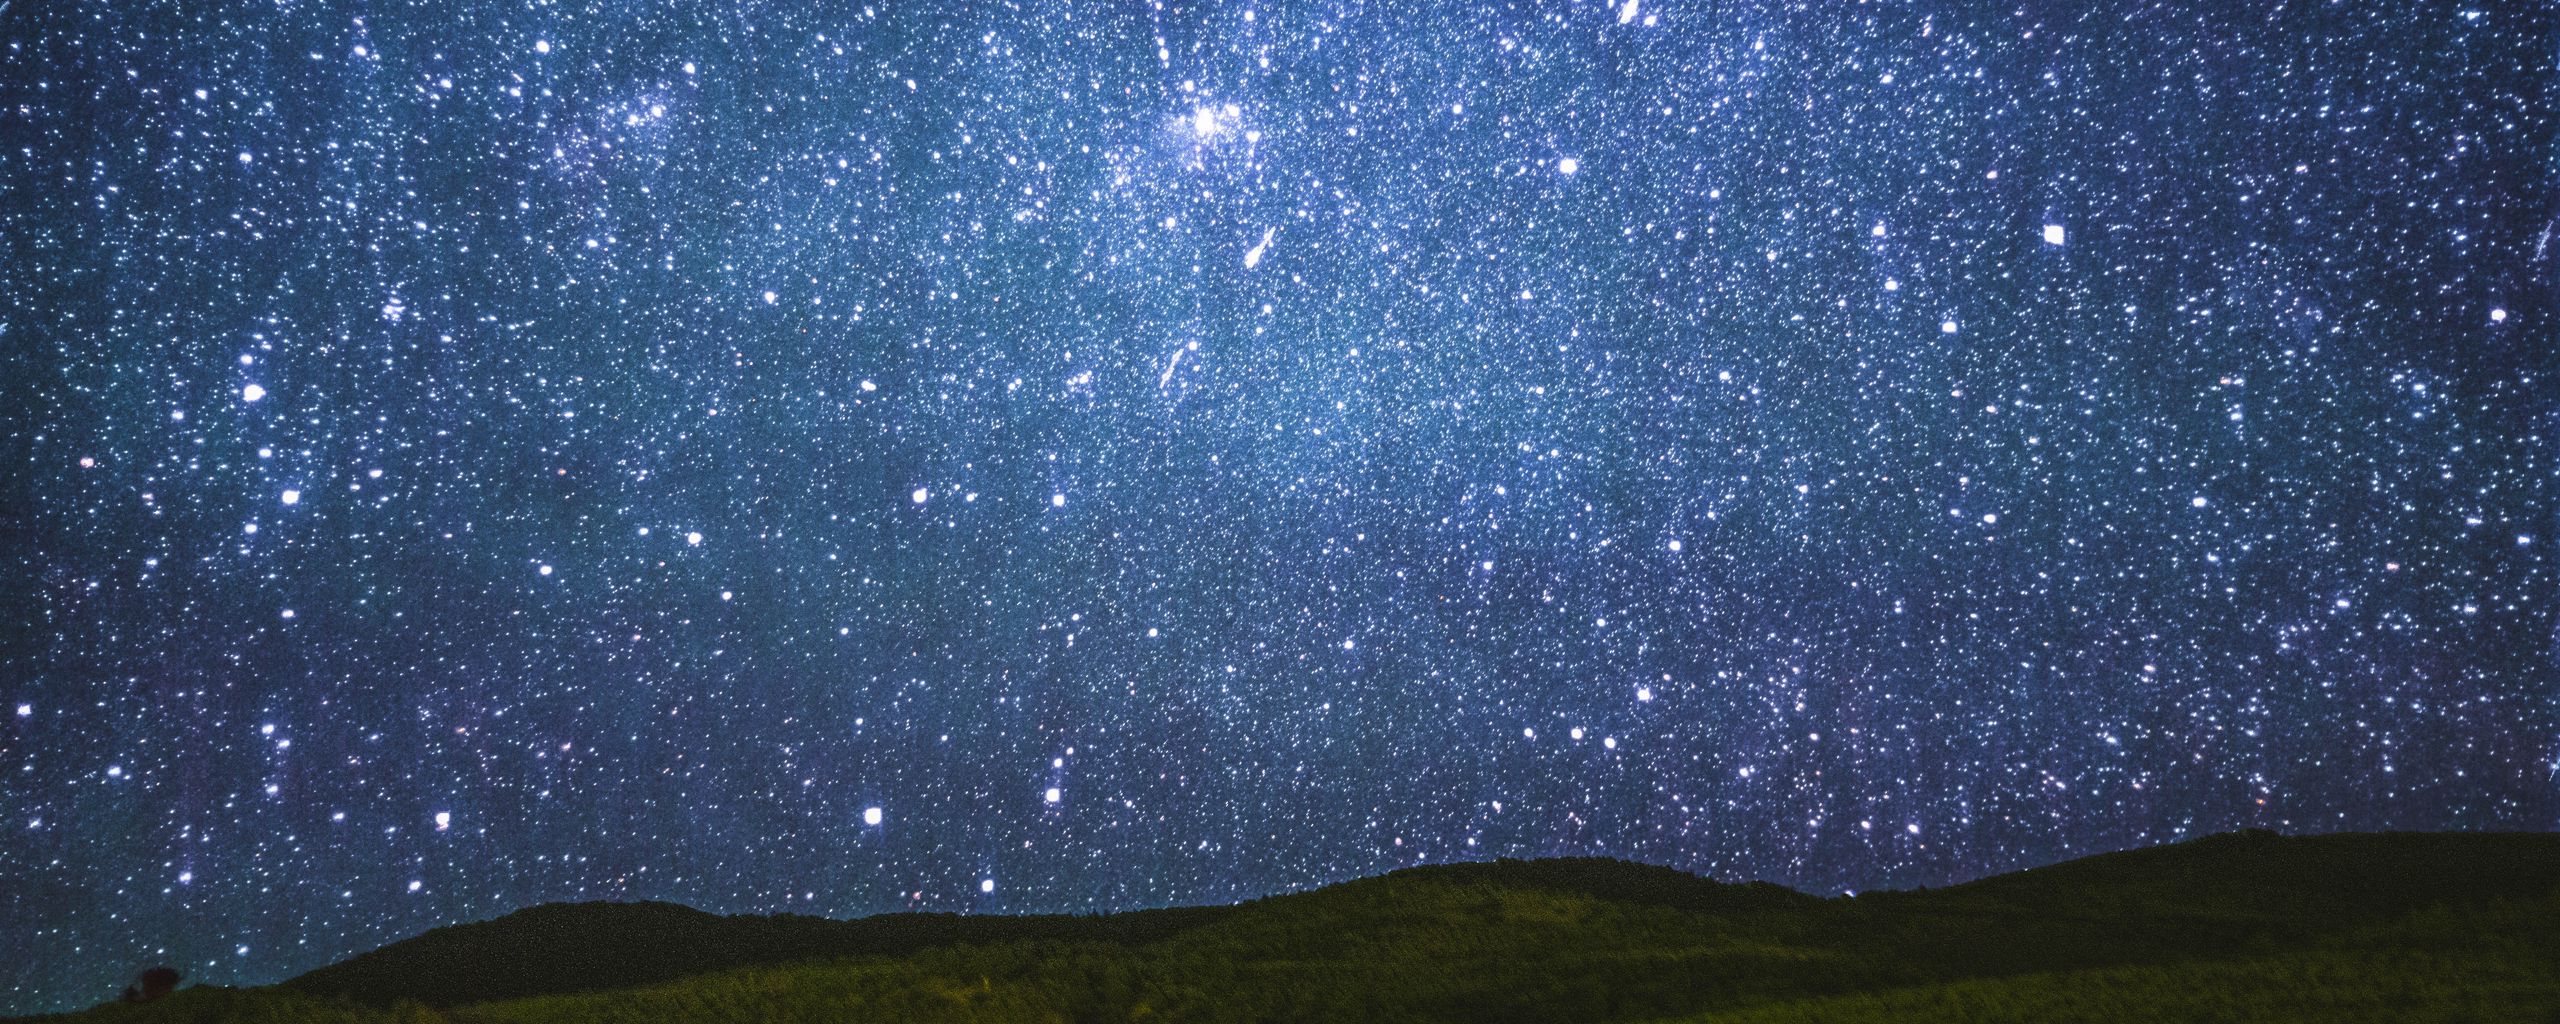 Tải hình nền 2560x1024 bầu trời đầy sao, sao, đêm (starry sky, stars, sky, night): Hãy cùng nhìn lên bầu trời và thưởng ngoạn những vì sao lấp lánh. Với hình nền bầu trời đêm đầy sao sẽ đưa bạn đến những trải nghiệm tuyệt vời và khó quên. Tải ngay để cảm nhận!